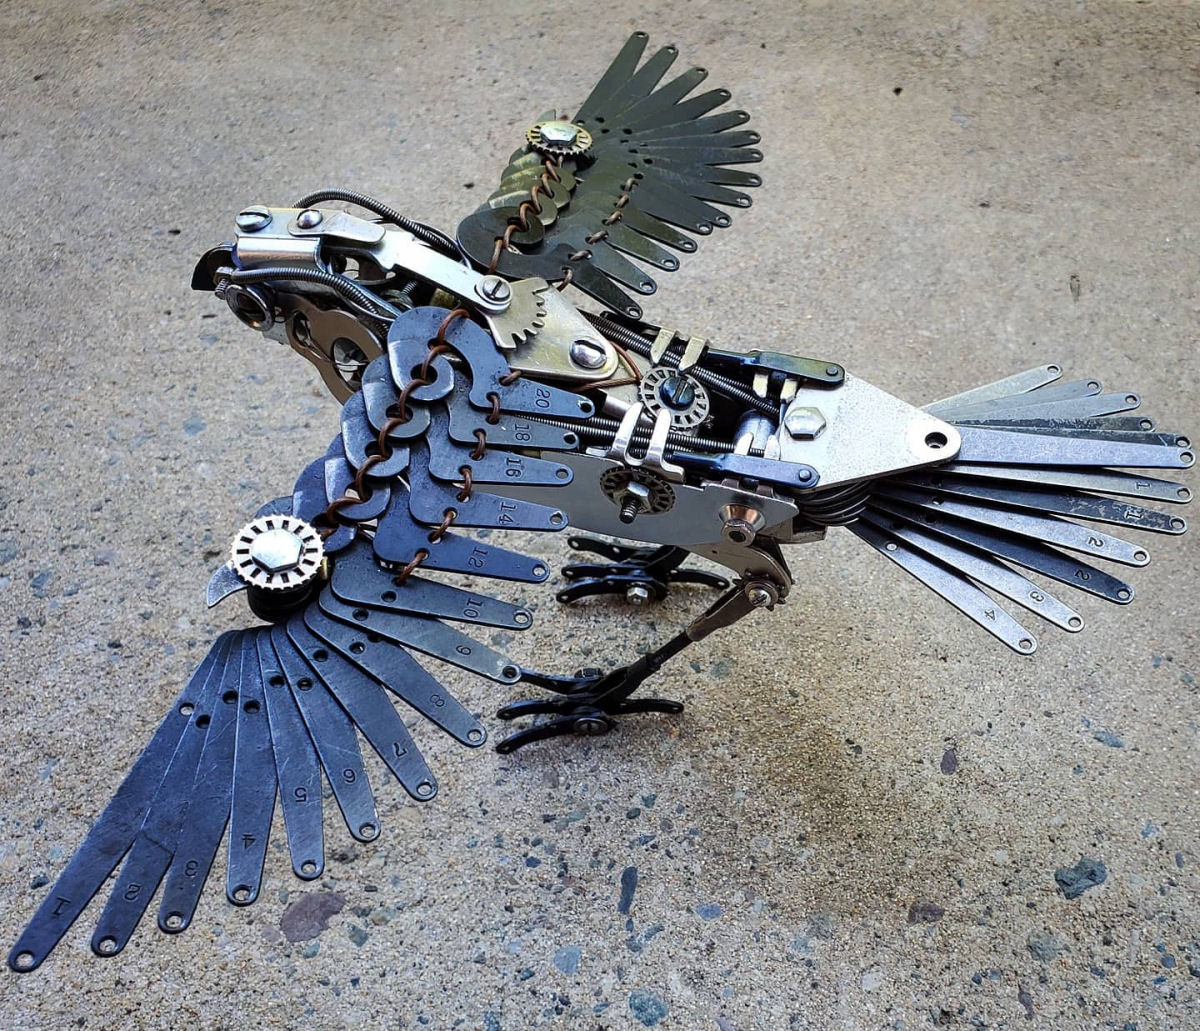 Sucata de máquinas de escrever ganham nova vida como incríveis esculturas de pássaros 04